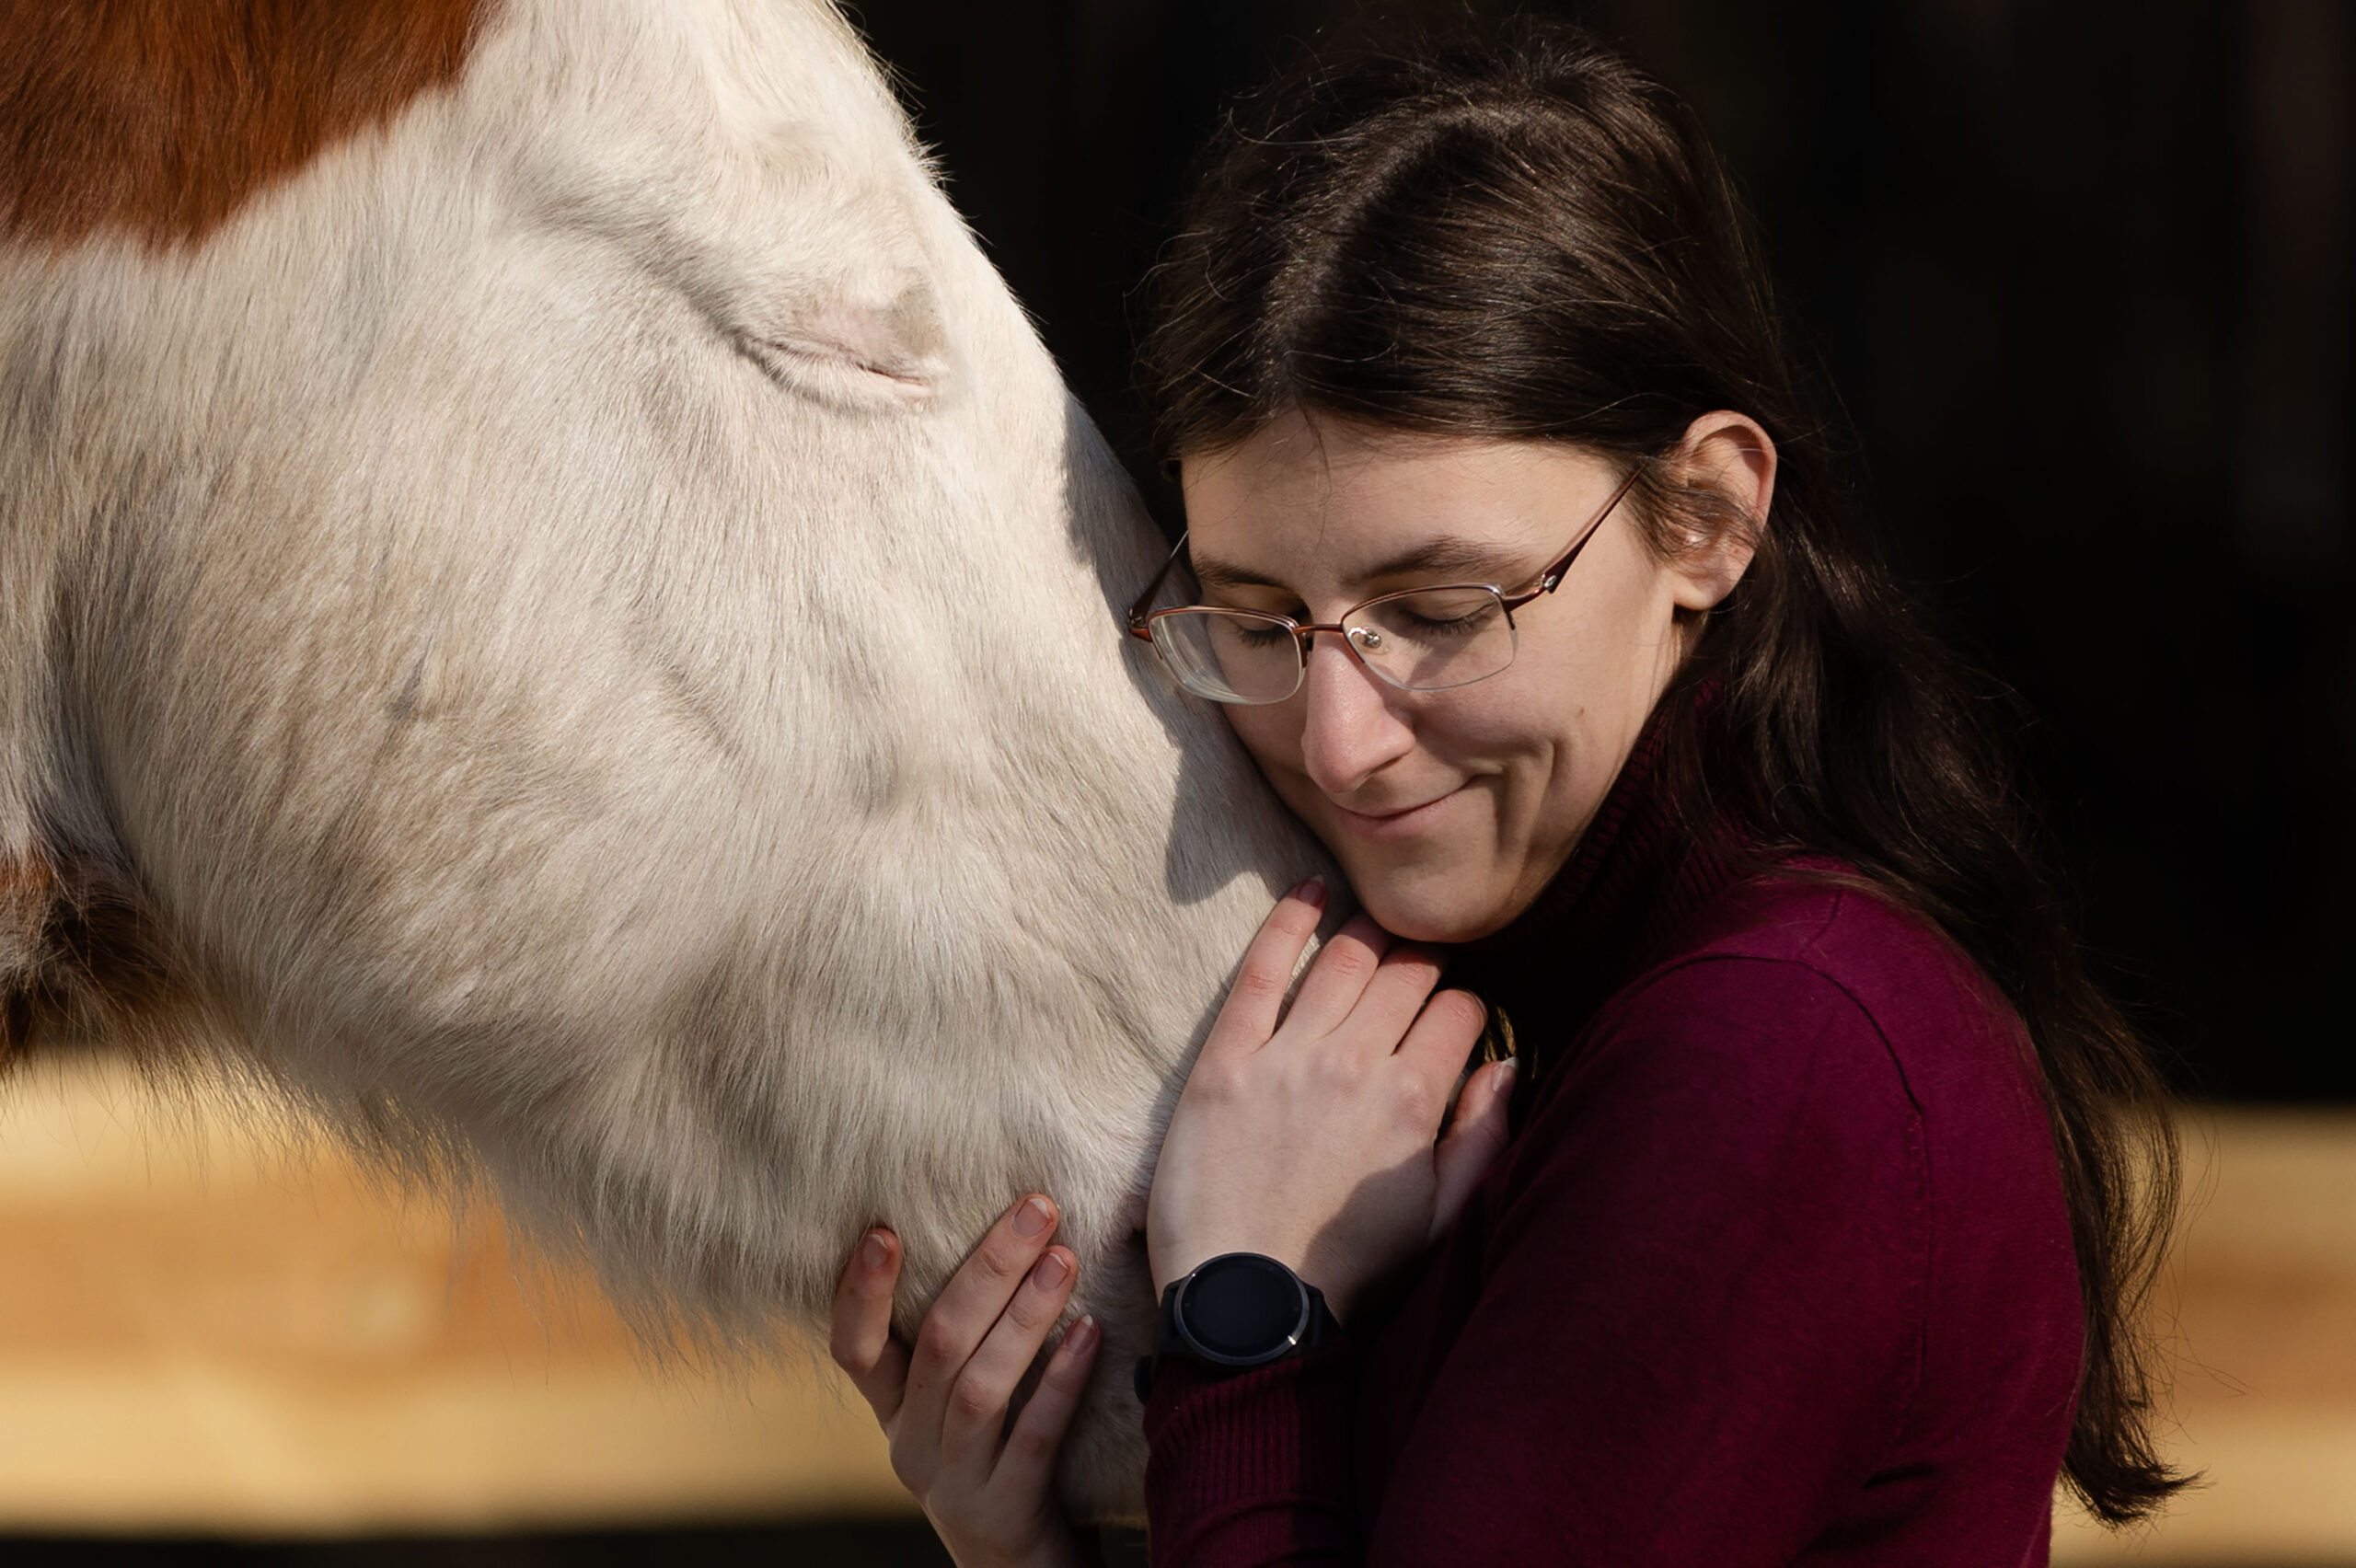 Frau mit braunen Haaren und Brille kuschelt sich an die Nüstern eines weiß-braun-gescheckten Pferdes. Beide haben die Augen zu